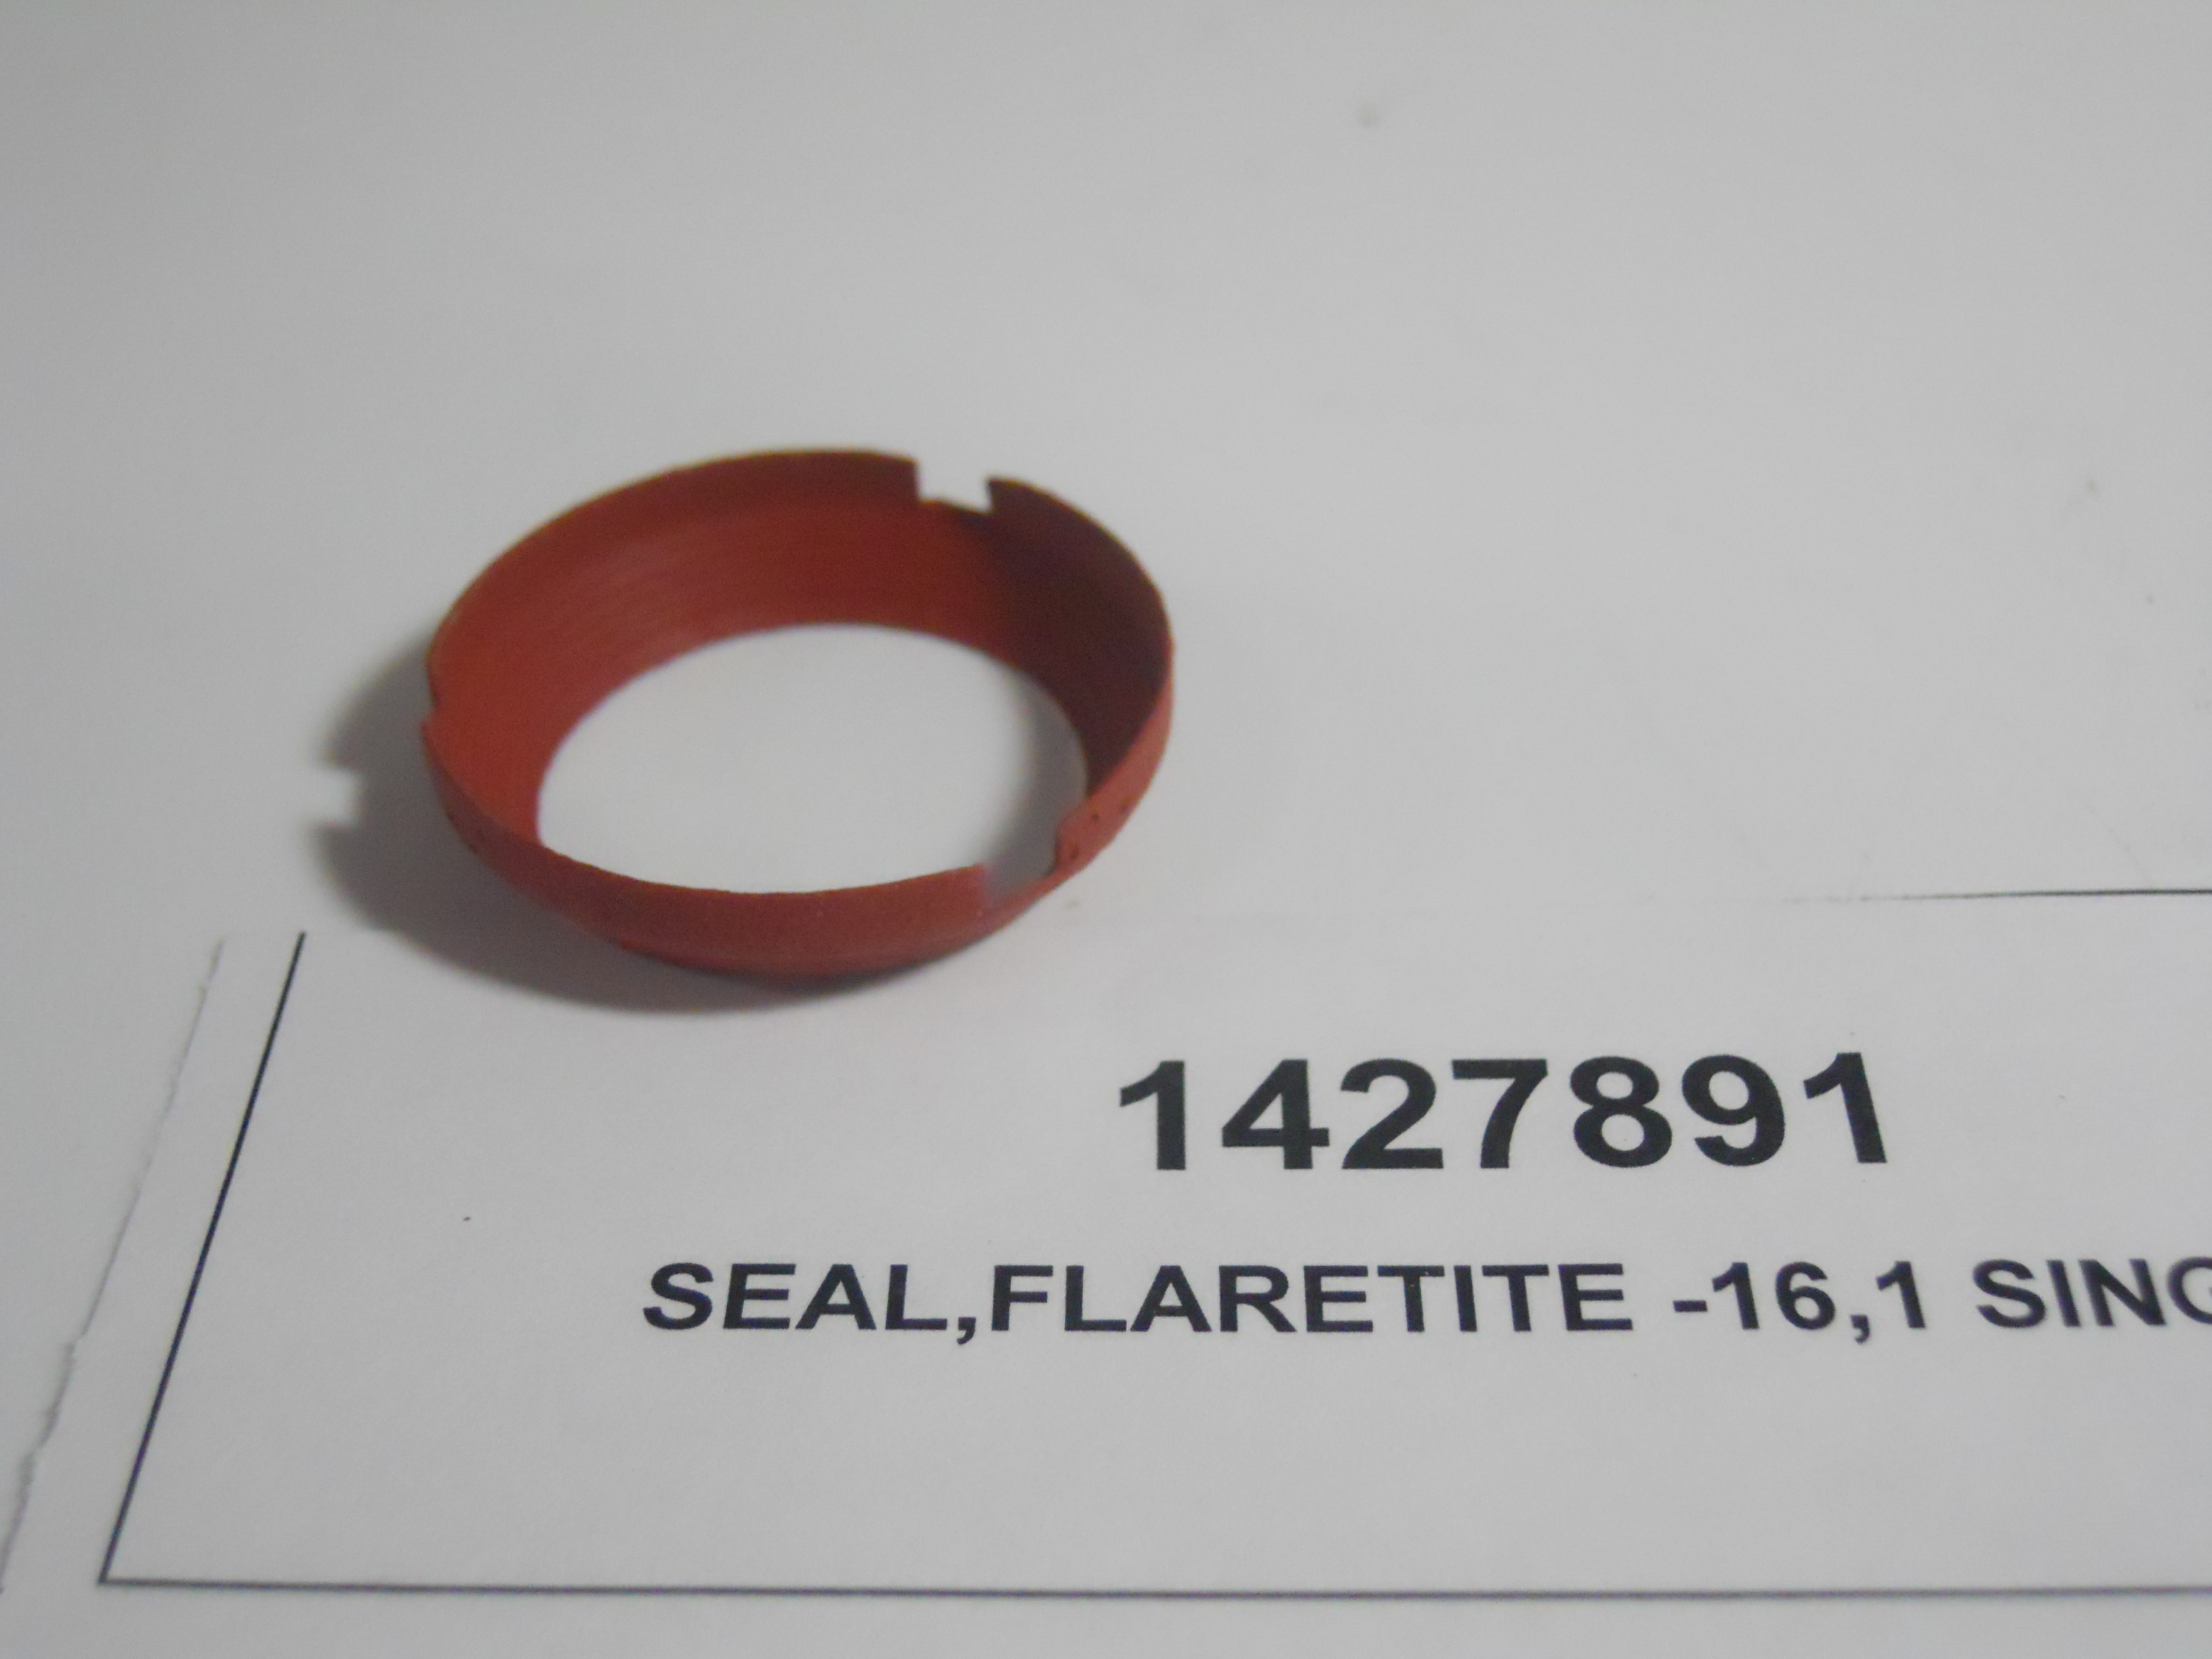 SEAL,FLARETITE -16,1 SINGLE